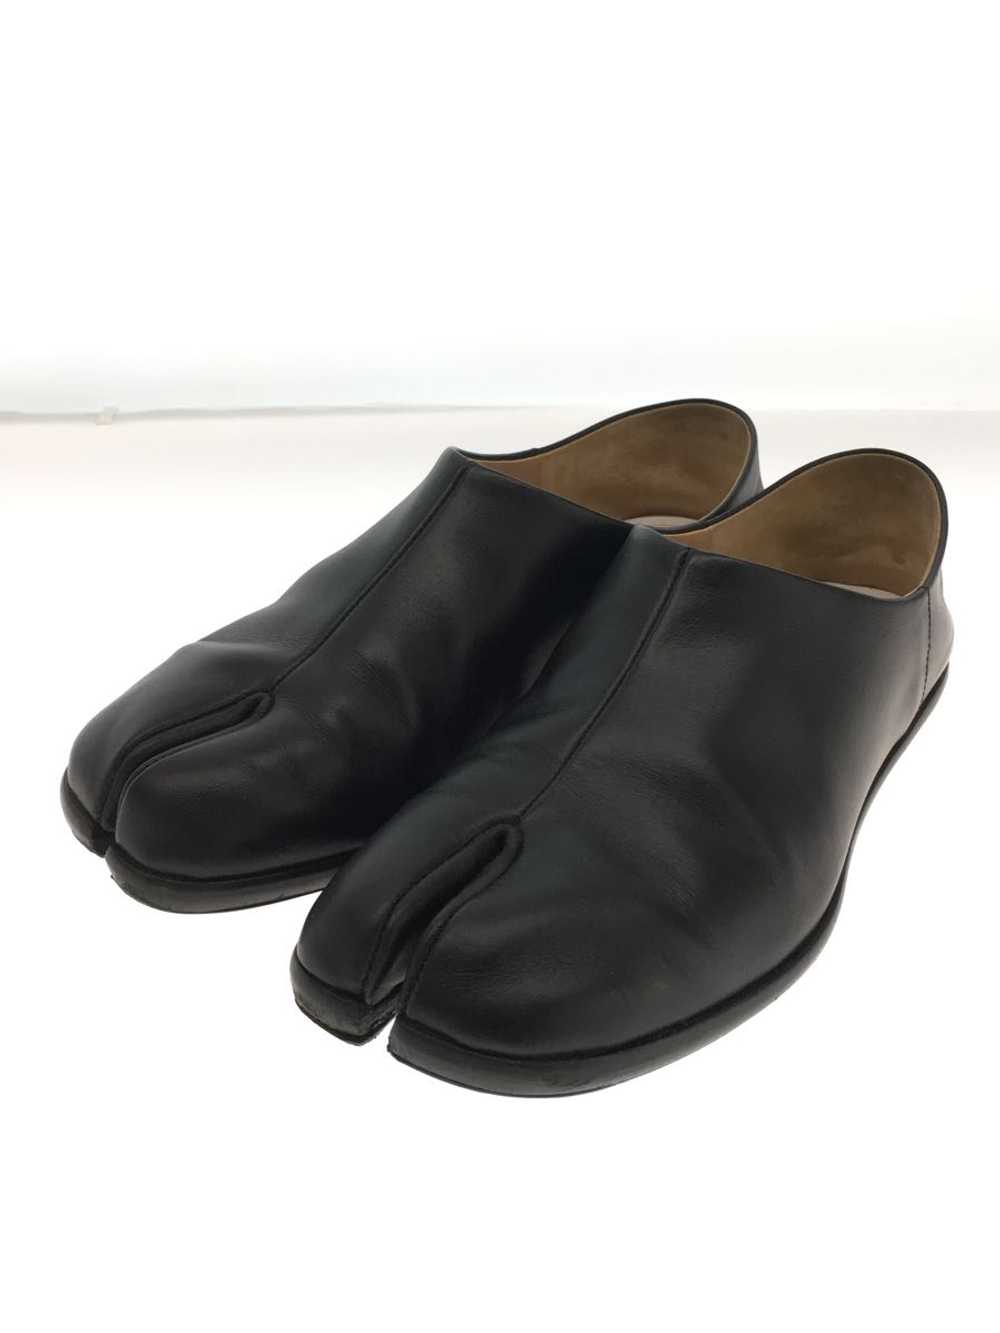 Maison Margiela Shoes/36/Blk/Leather/S58Wr0033 Sh… - image 2